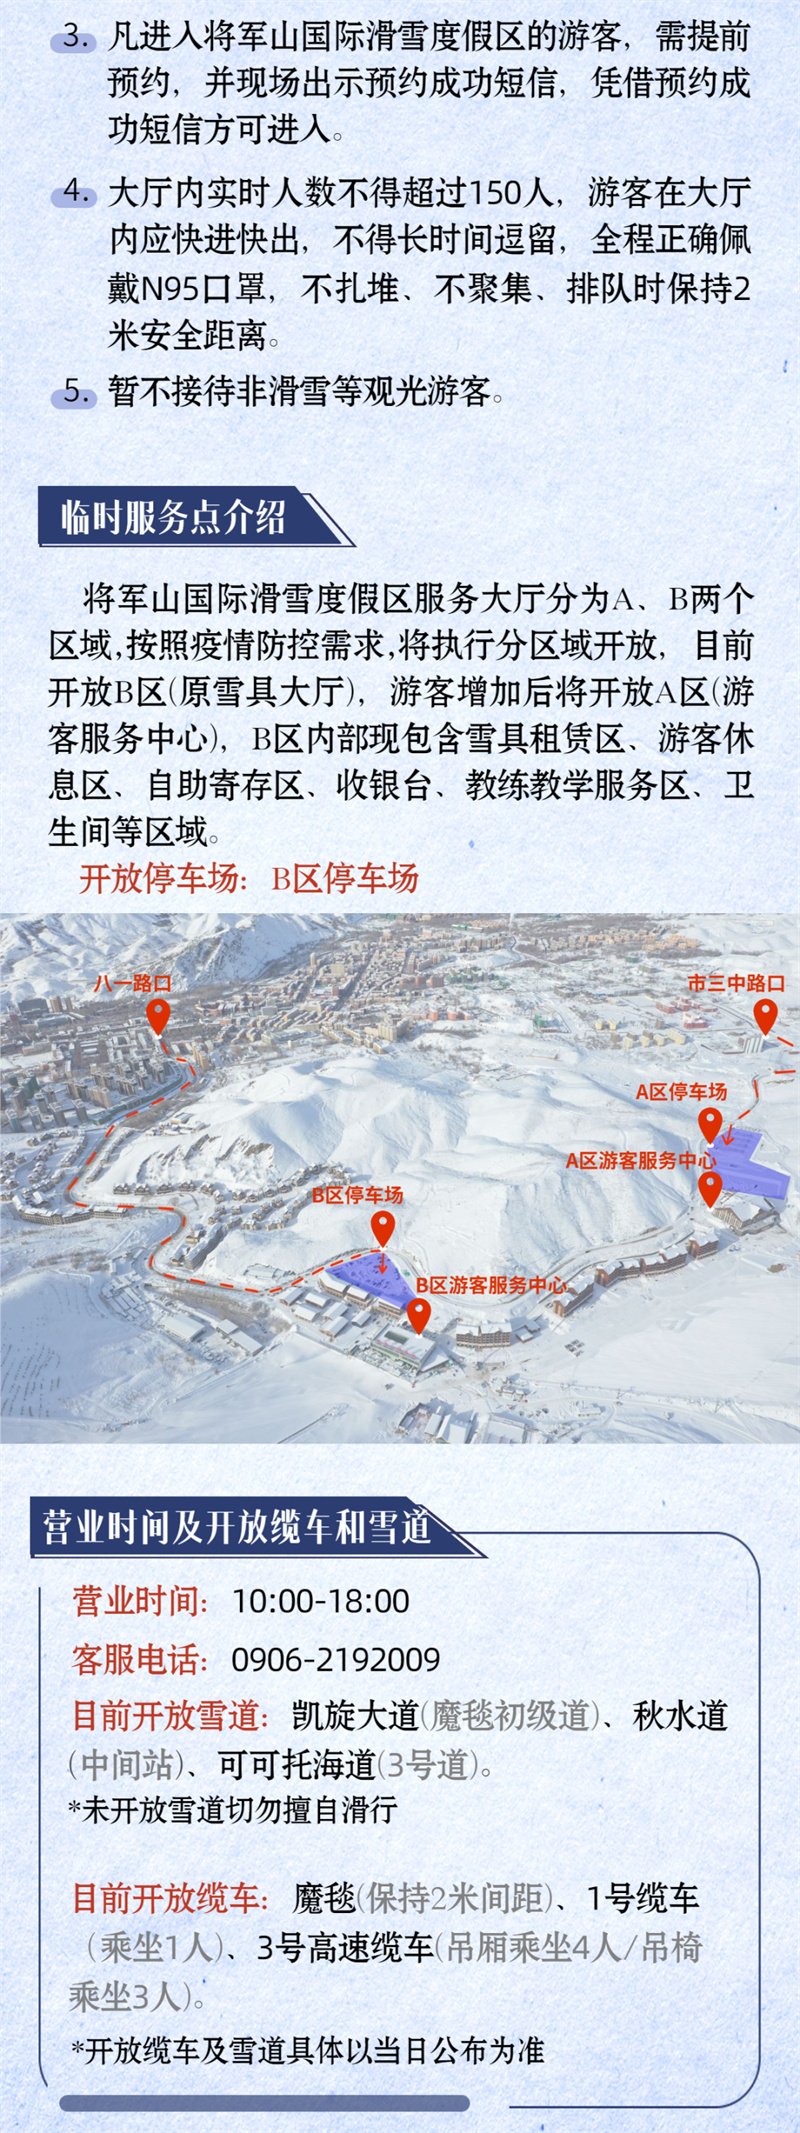 将军山国际滑雪度假区12月3日开滑营业2